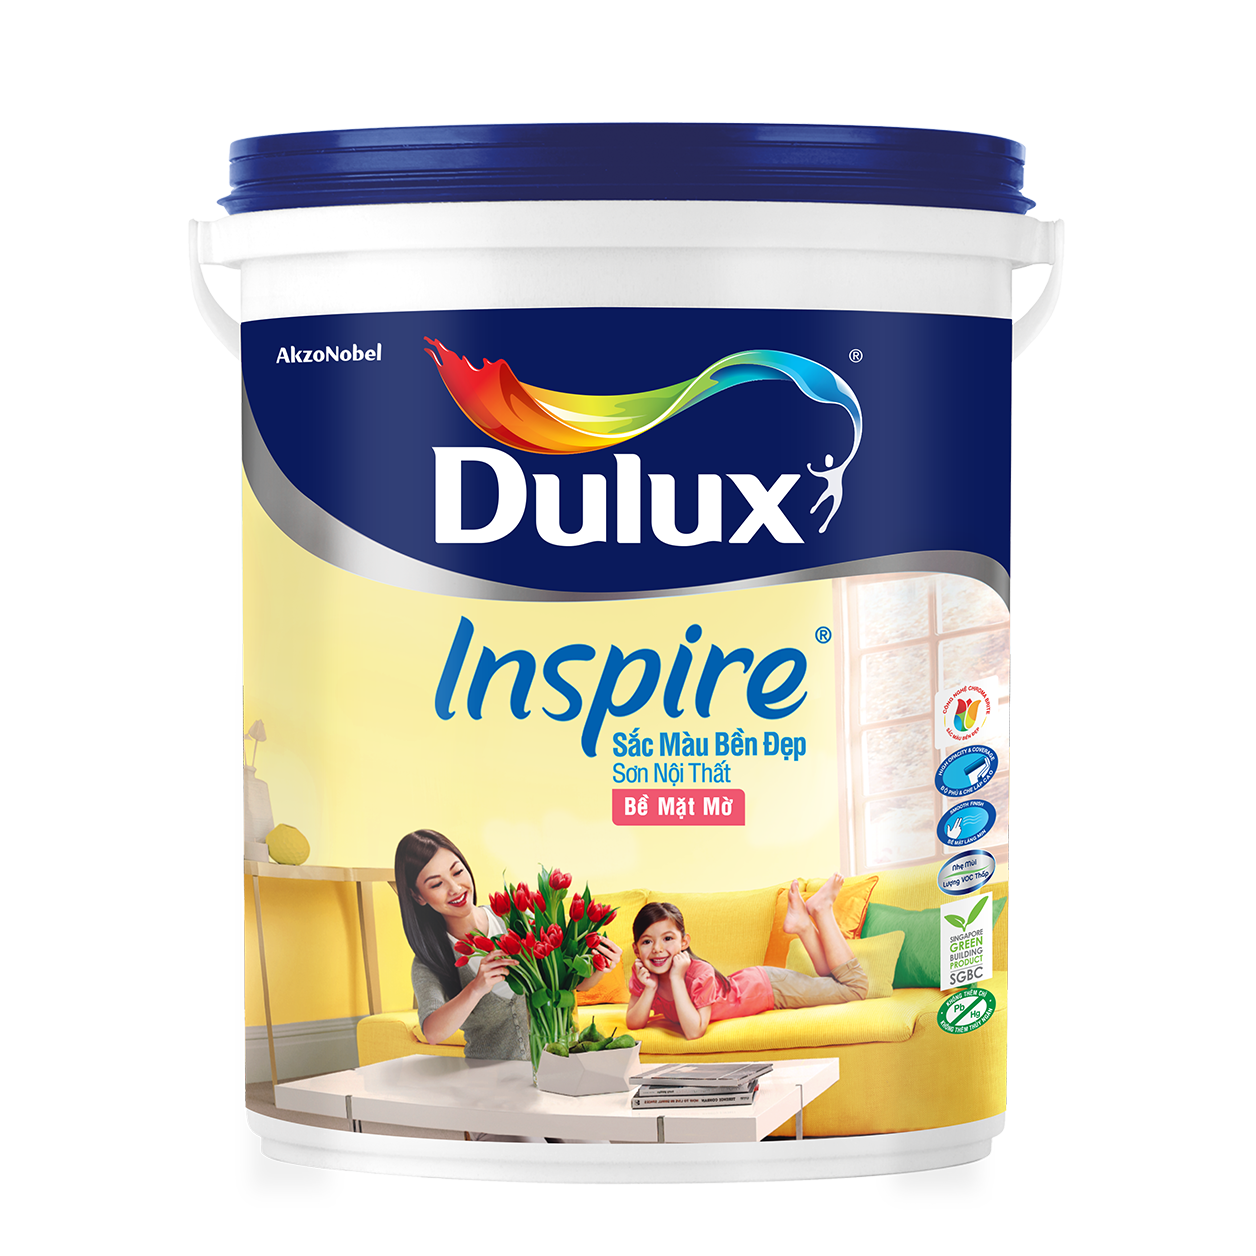 Cách sử dụng và bảo quản sơn Dulux Inspire như thế nào để đảm bảo chất lượng sơn?